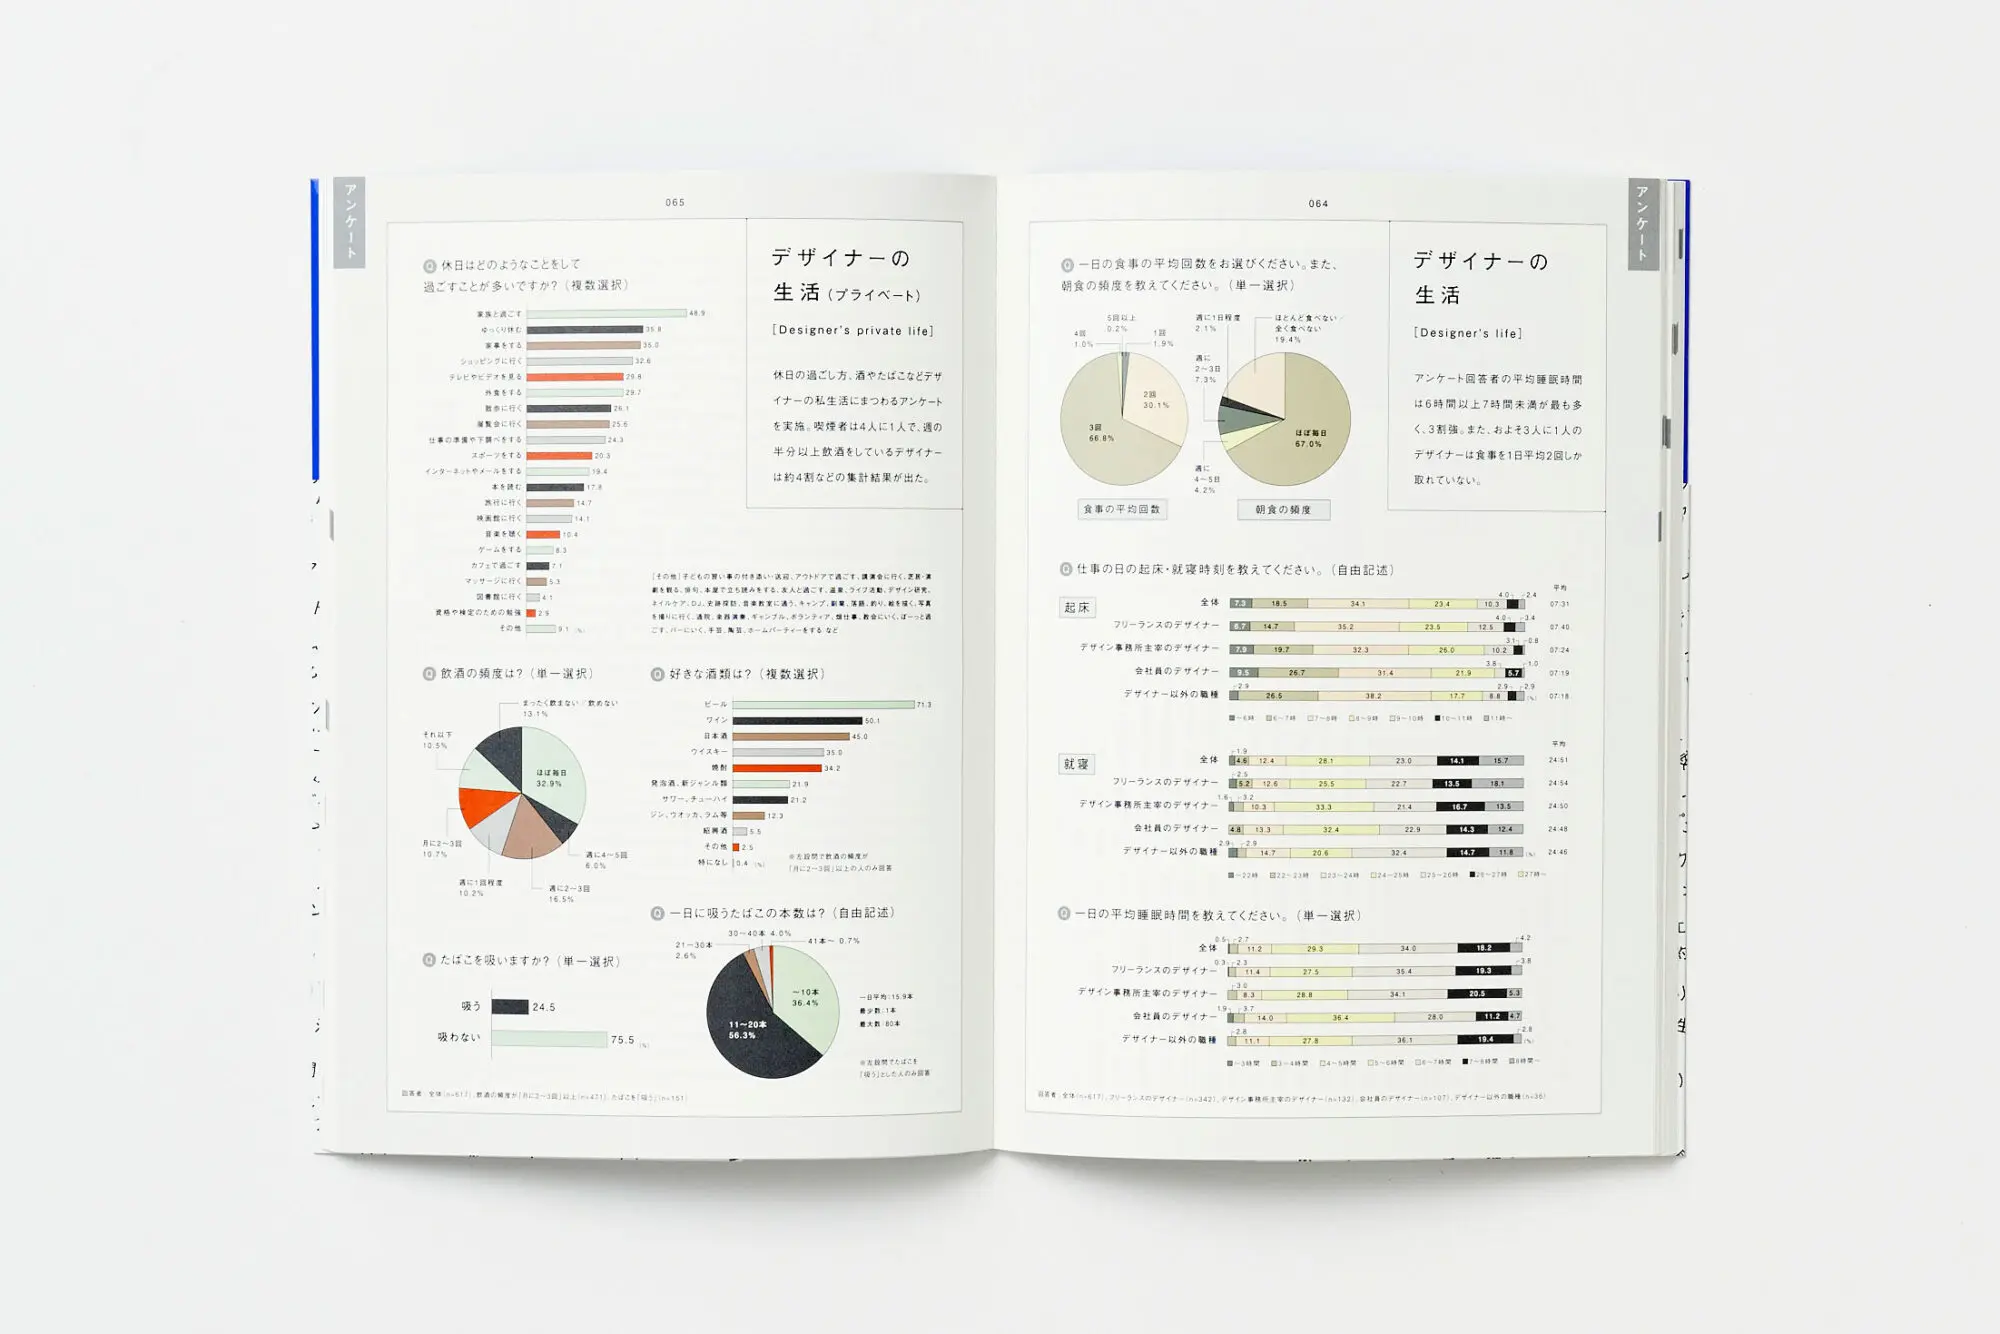 デザインのあれこれ 100 Keywords of Design: JAGDA REPORT (JAGDA